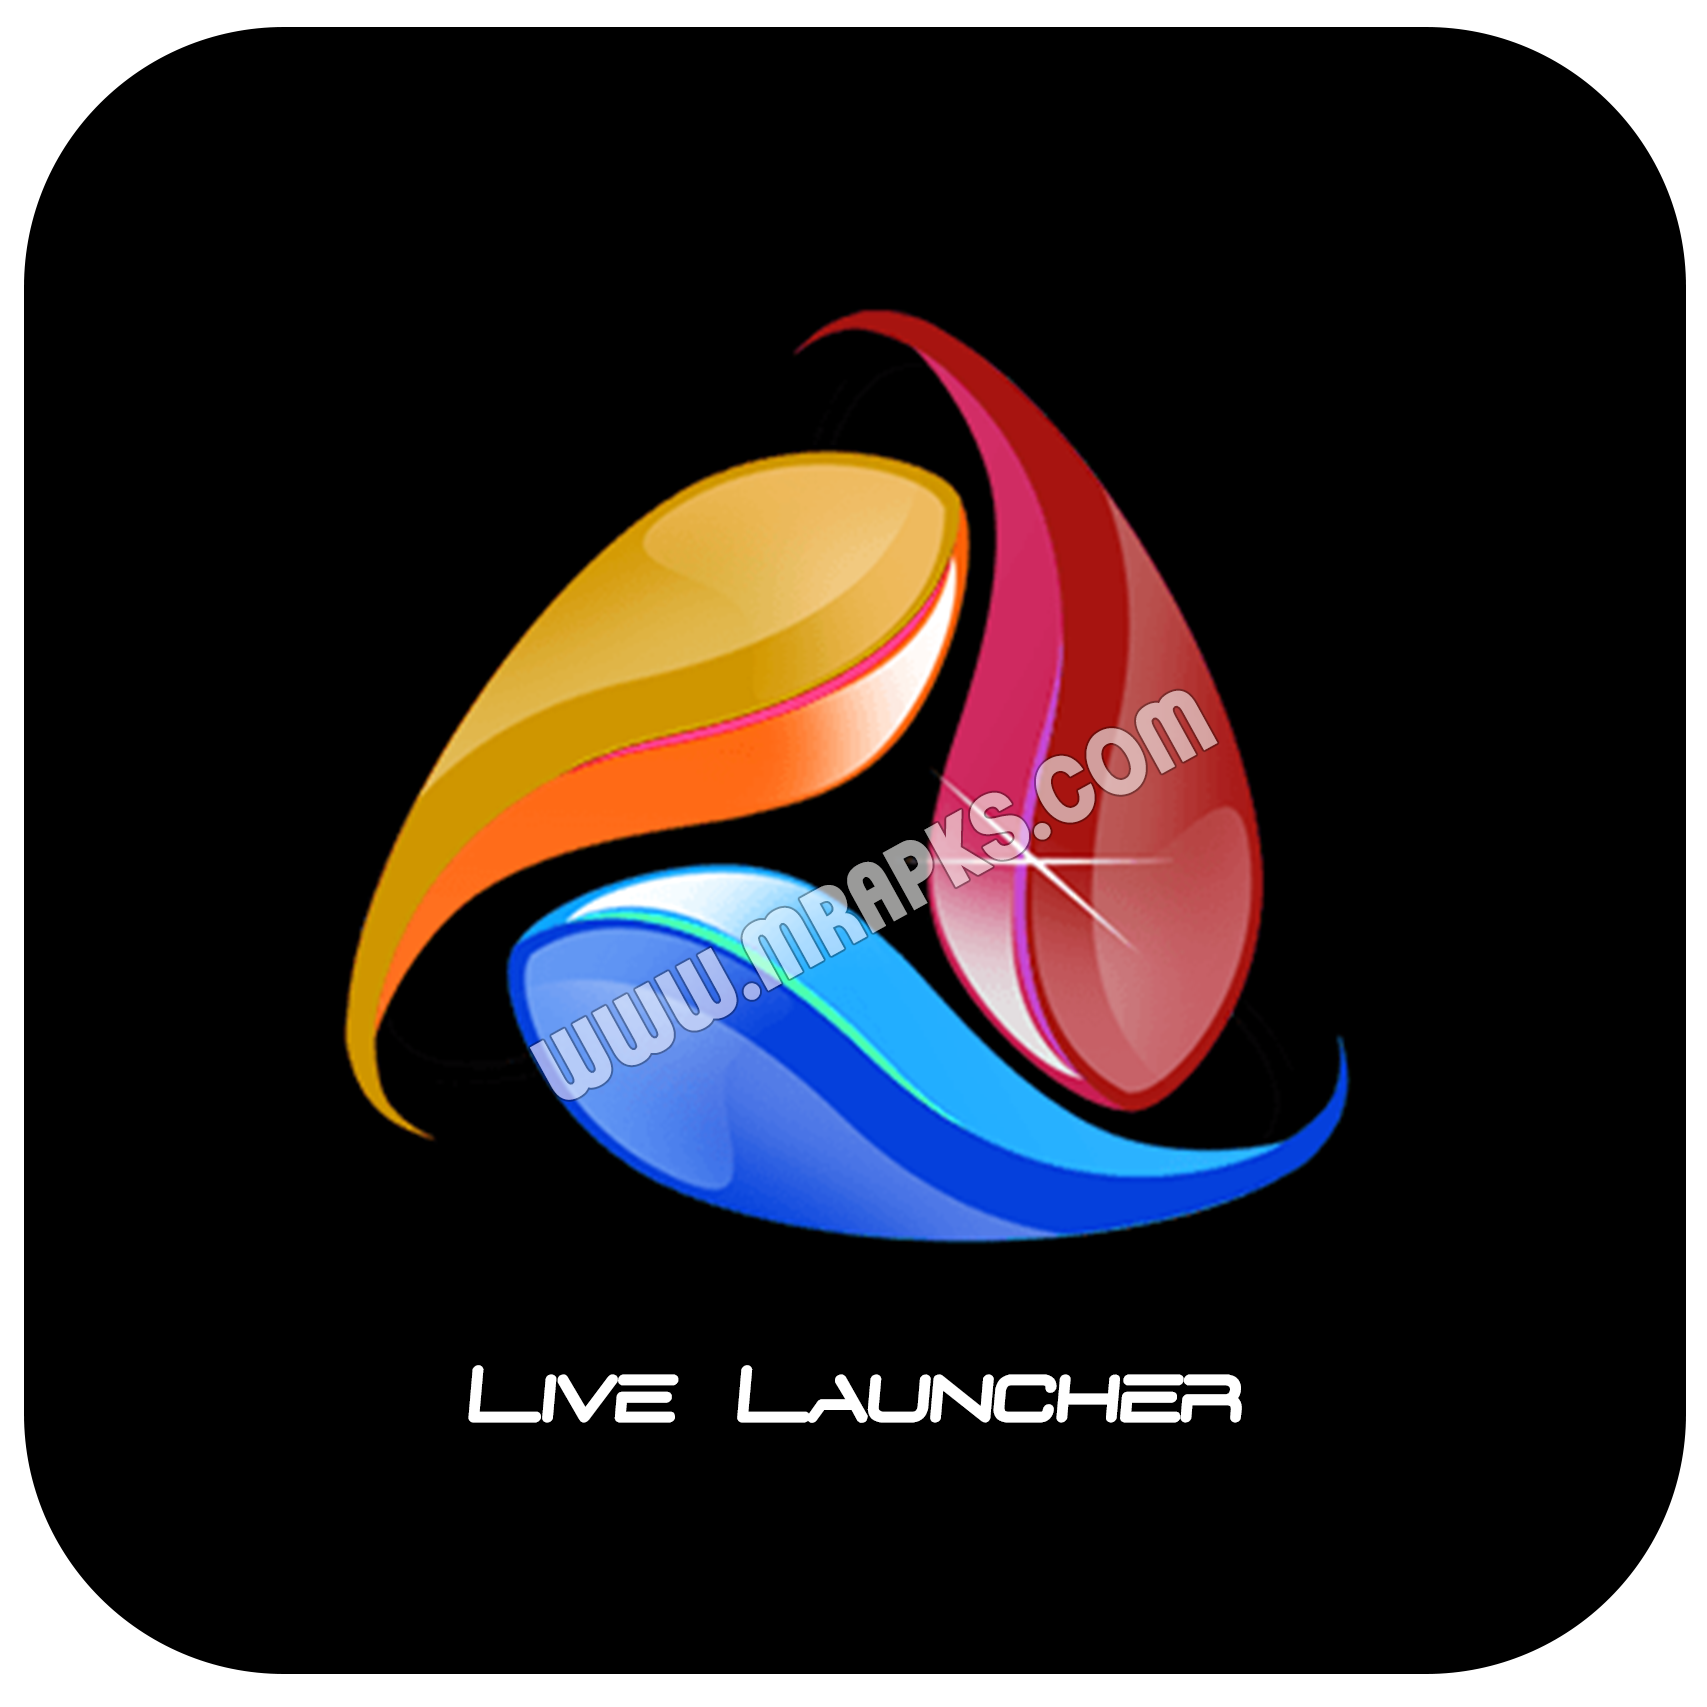 3D Launcher – Your Perfect 3D Live Launcher v5.7 (Premium) Apk